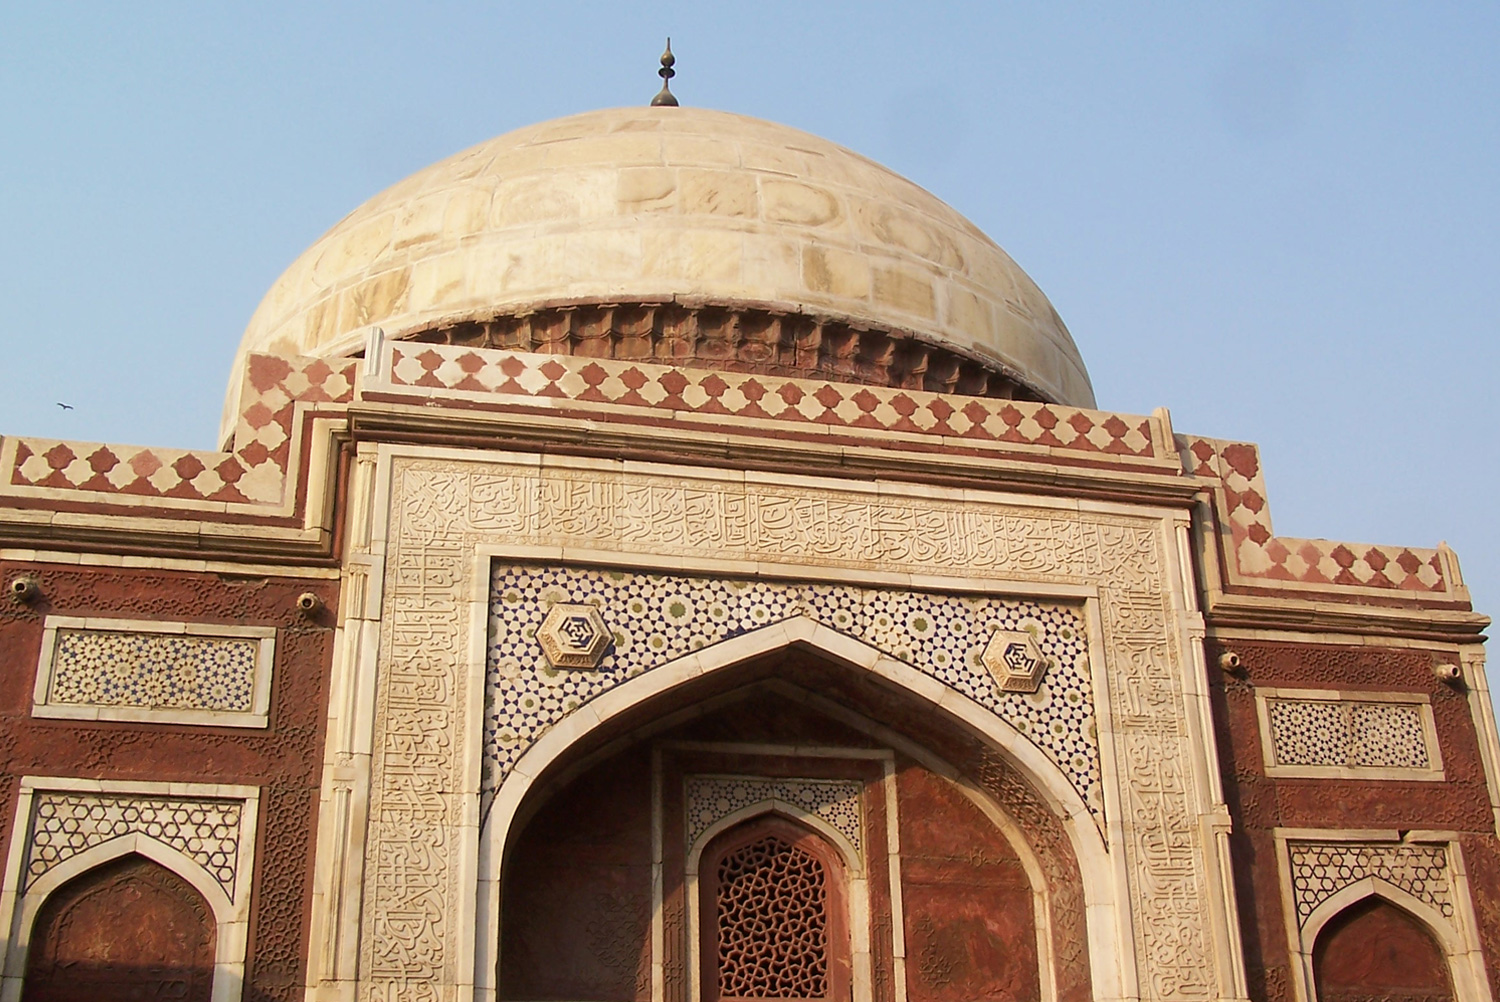 The Tomb of Atgah Khan, Delhi